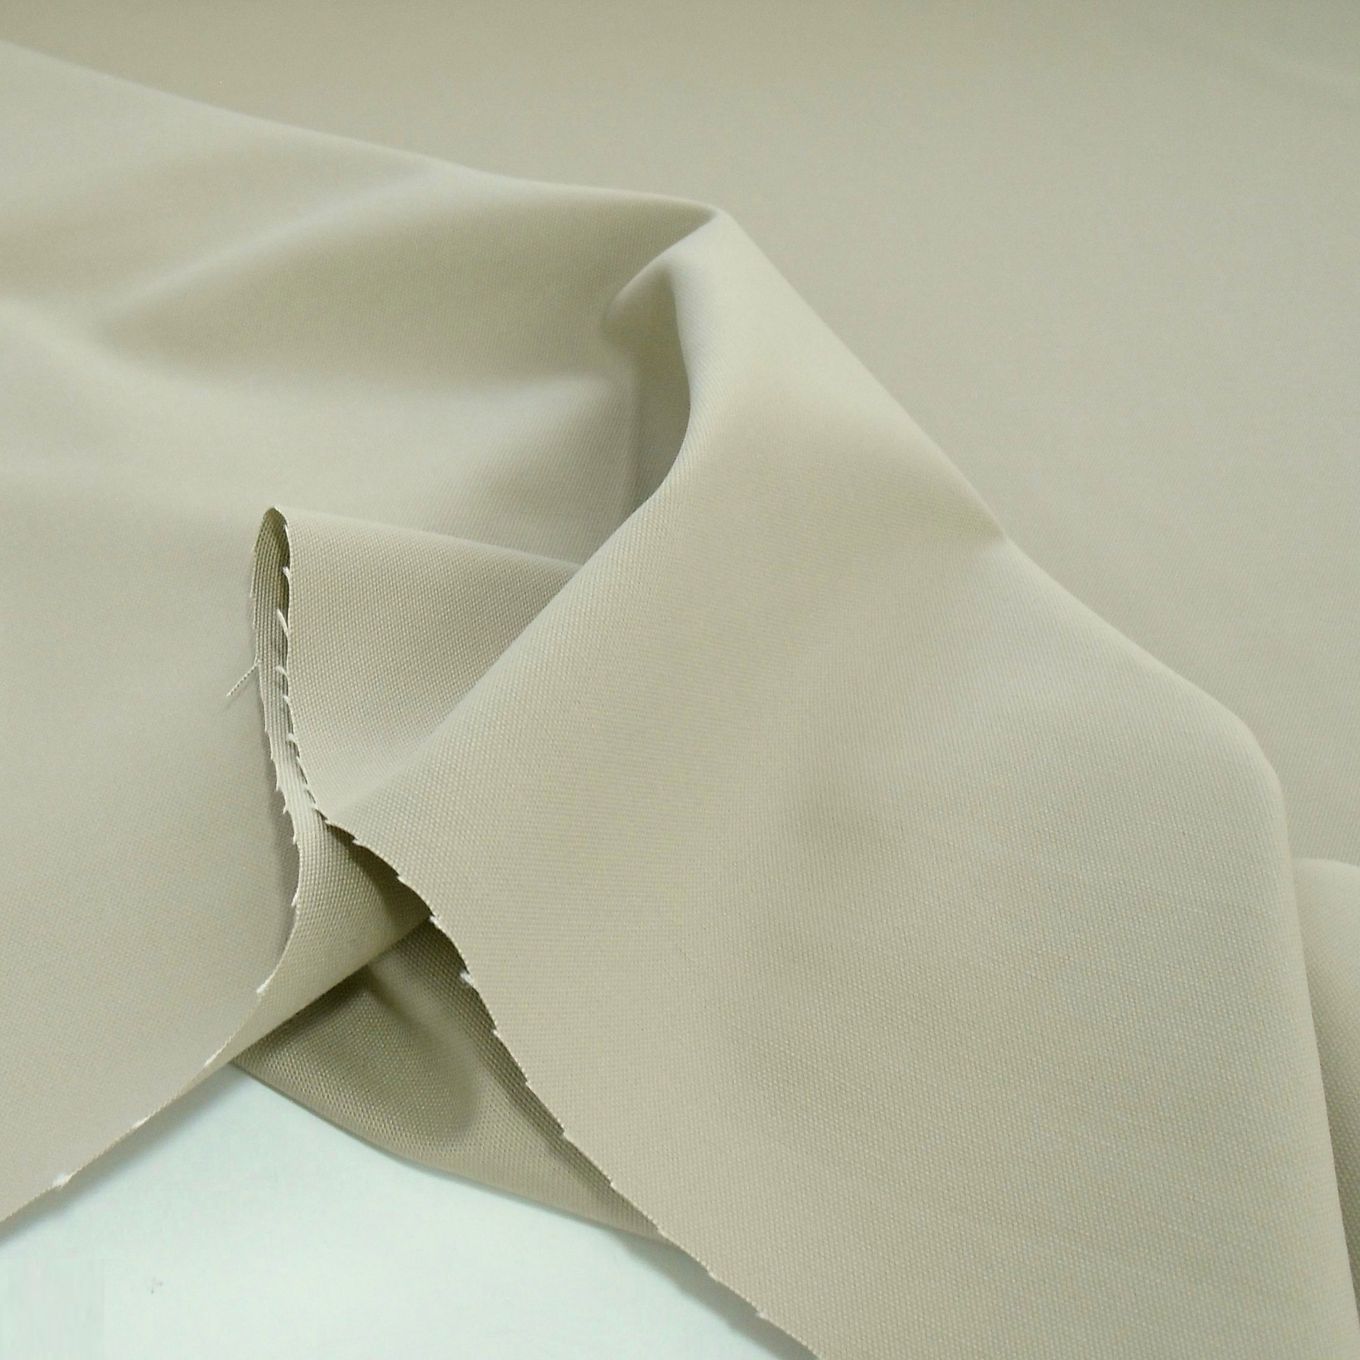 weicher Baumwoll-Canvas mittelschwer für Jacke Hose Polsterungen wie Segeltuch